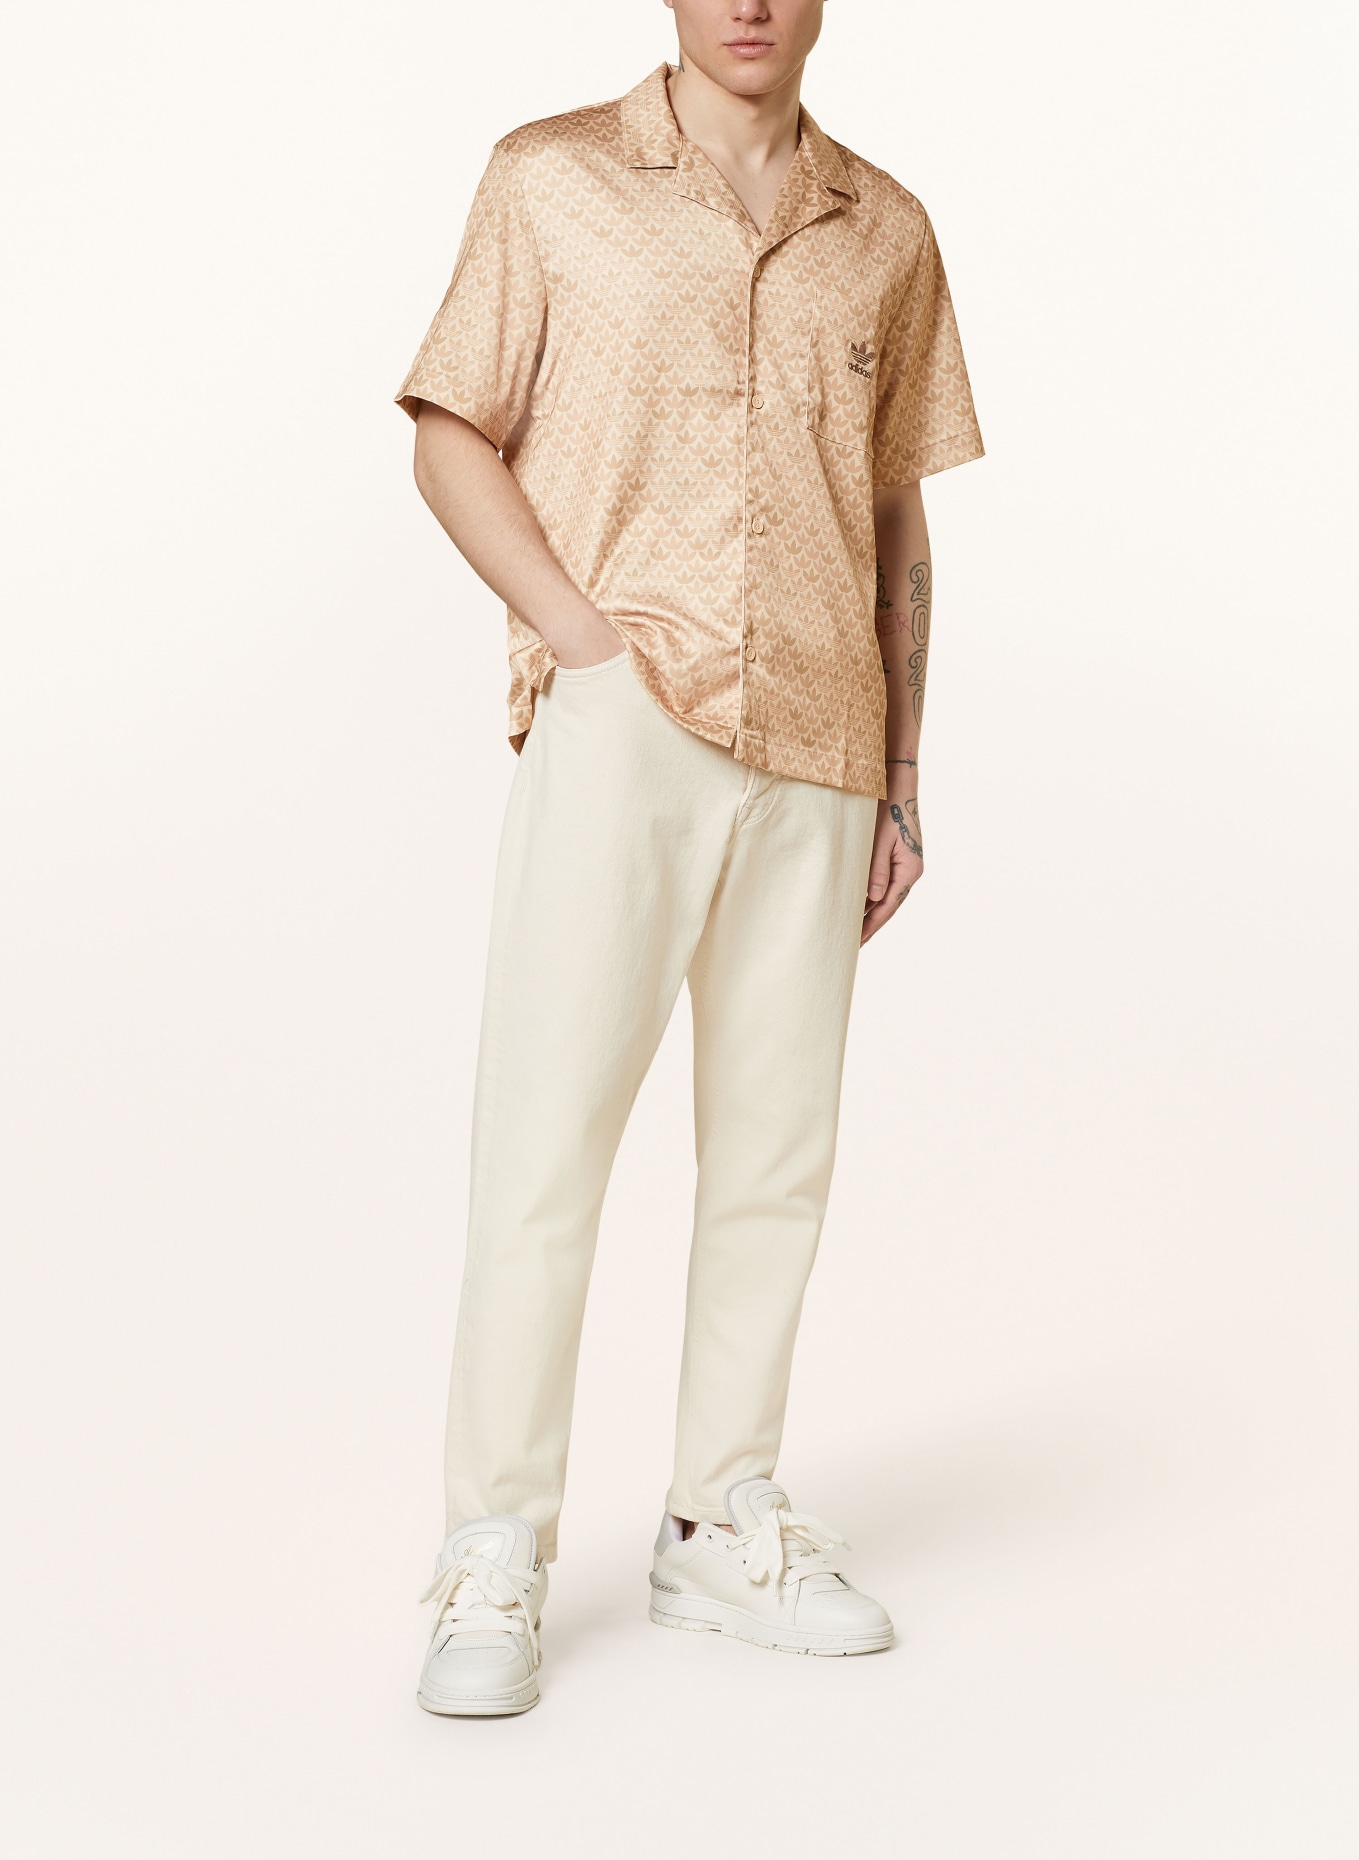 adidas Originals Resort shirt comfort fit made of satin, Color: BEIGE/ CAMEL/ LIGHT BROWN (Image 2)